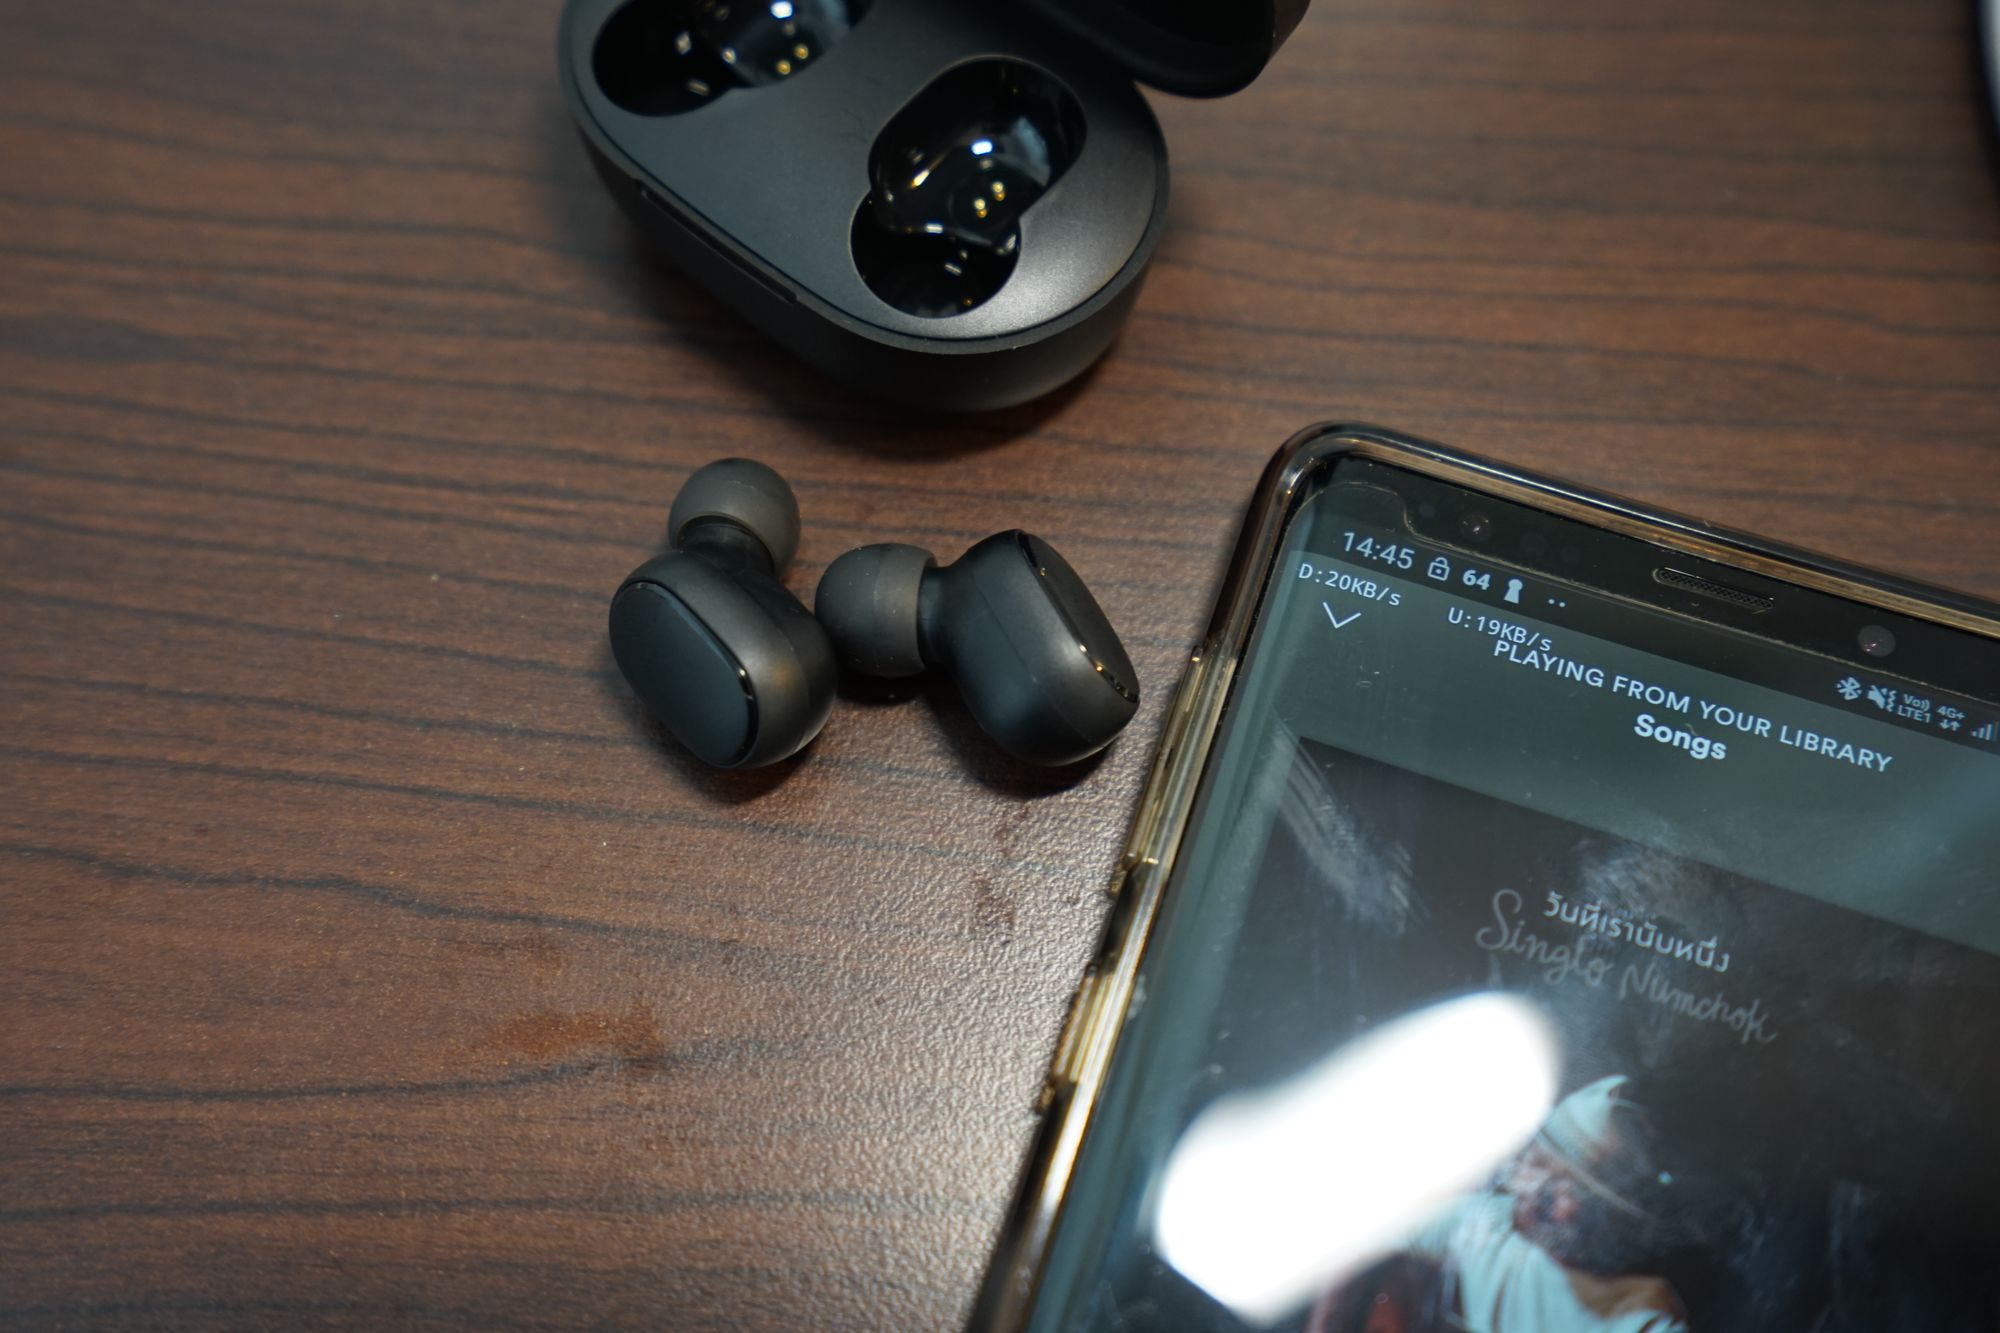 รีวิว Redmi AirDots หูฟัง True Wireless ราคาย่อมเยาว์